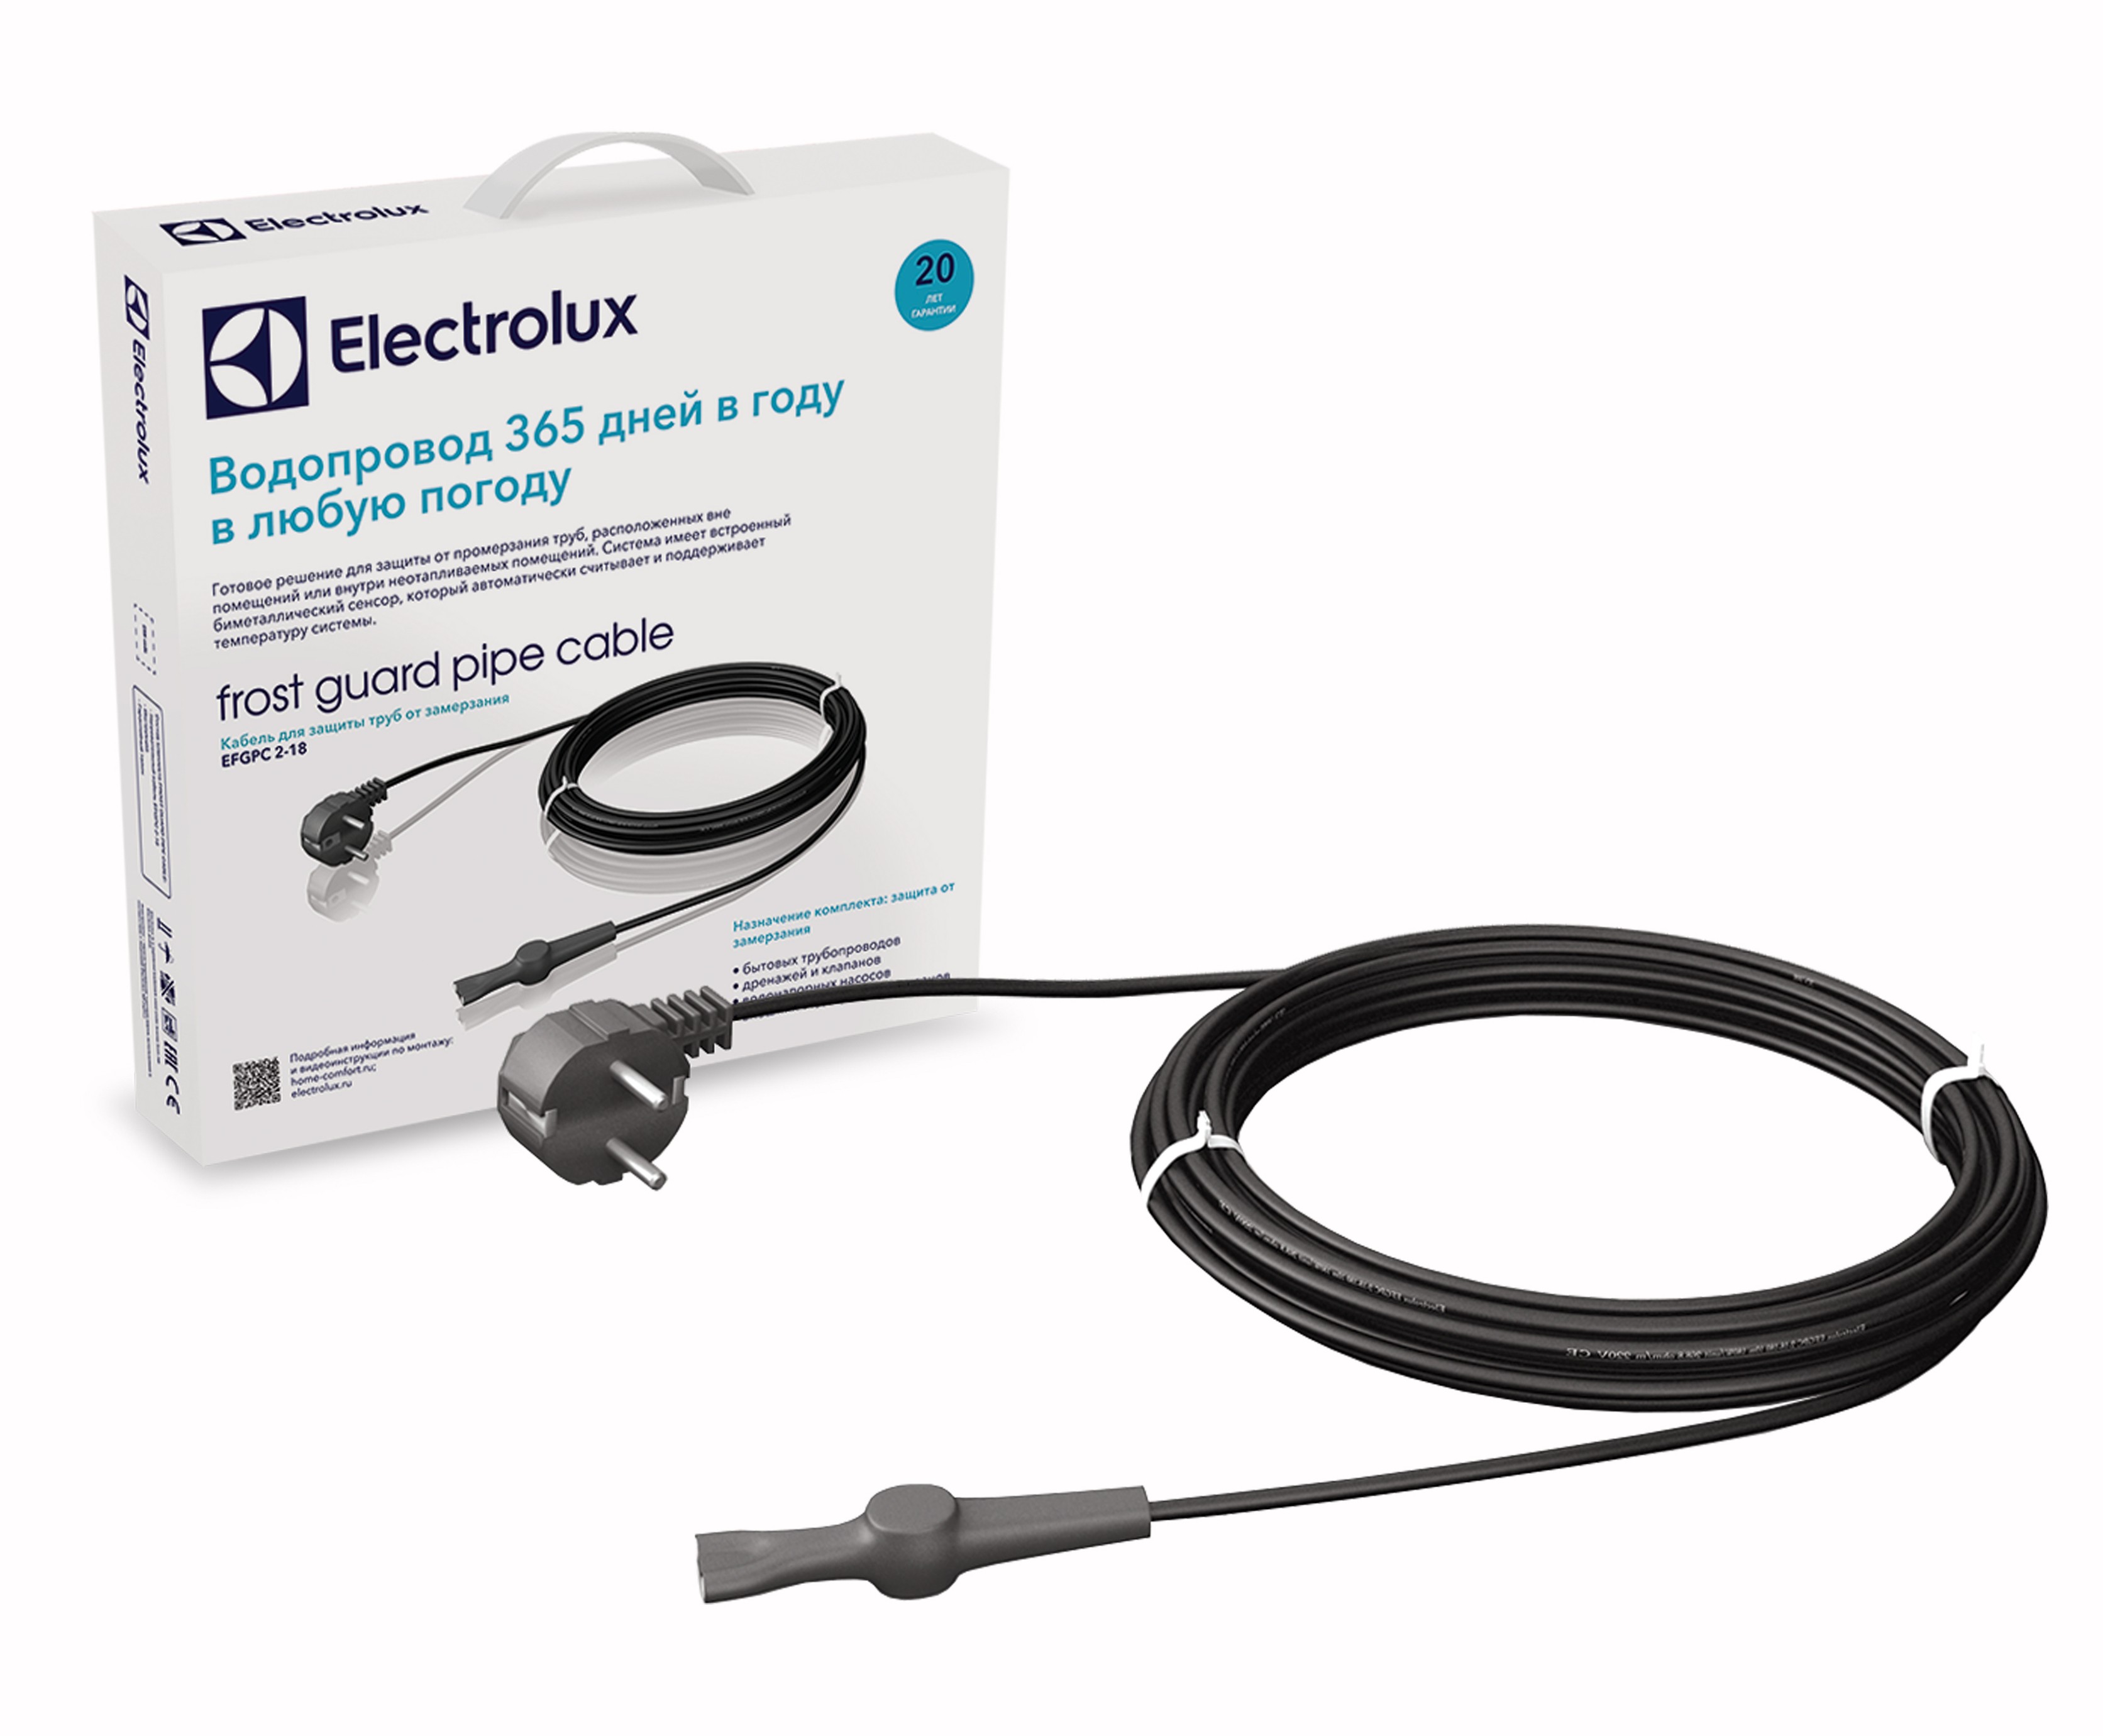 Цена саморегулирующийся кабель Electrolux EFGPC 2-18-2 (комплект) в Киеве